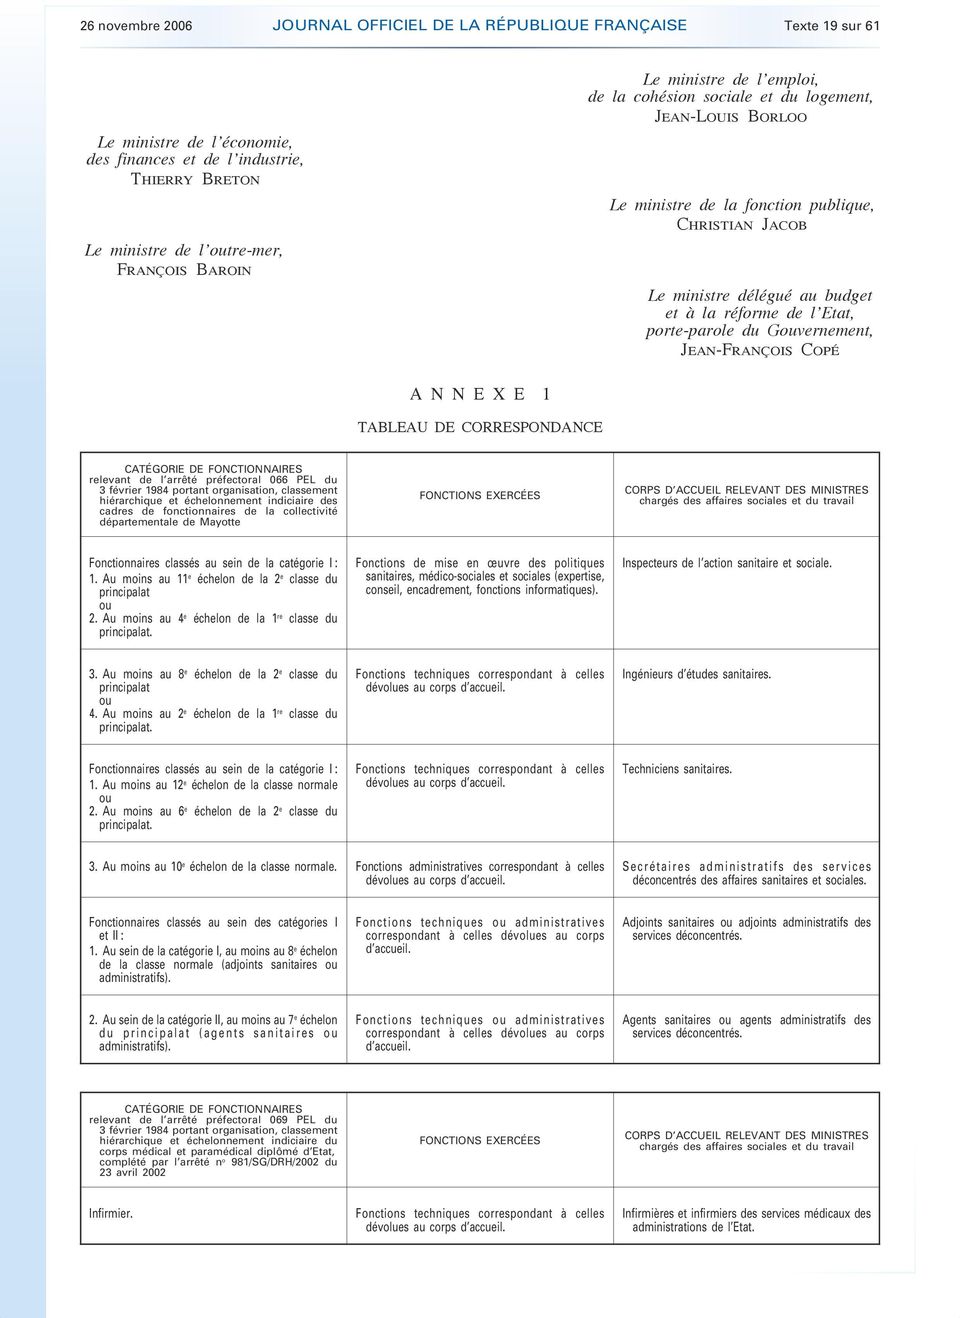 CATÉGORIE DE FONCTIONNAIRES relevant de l arrêté préfectoral 066 PEL du 3 février 1984 portant organisation, classement hiérarchique et échelonnement indiciaire des cadres de fonctionnaires de la